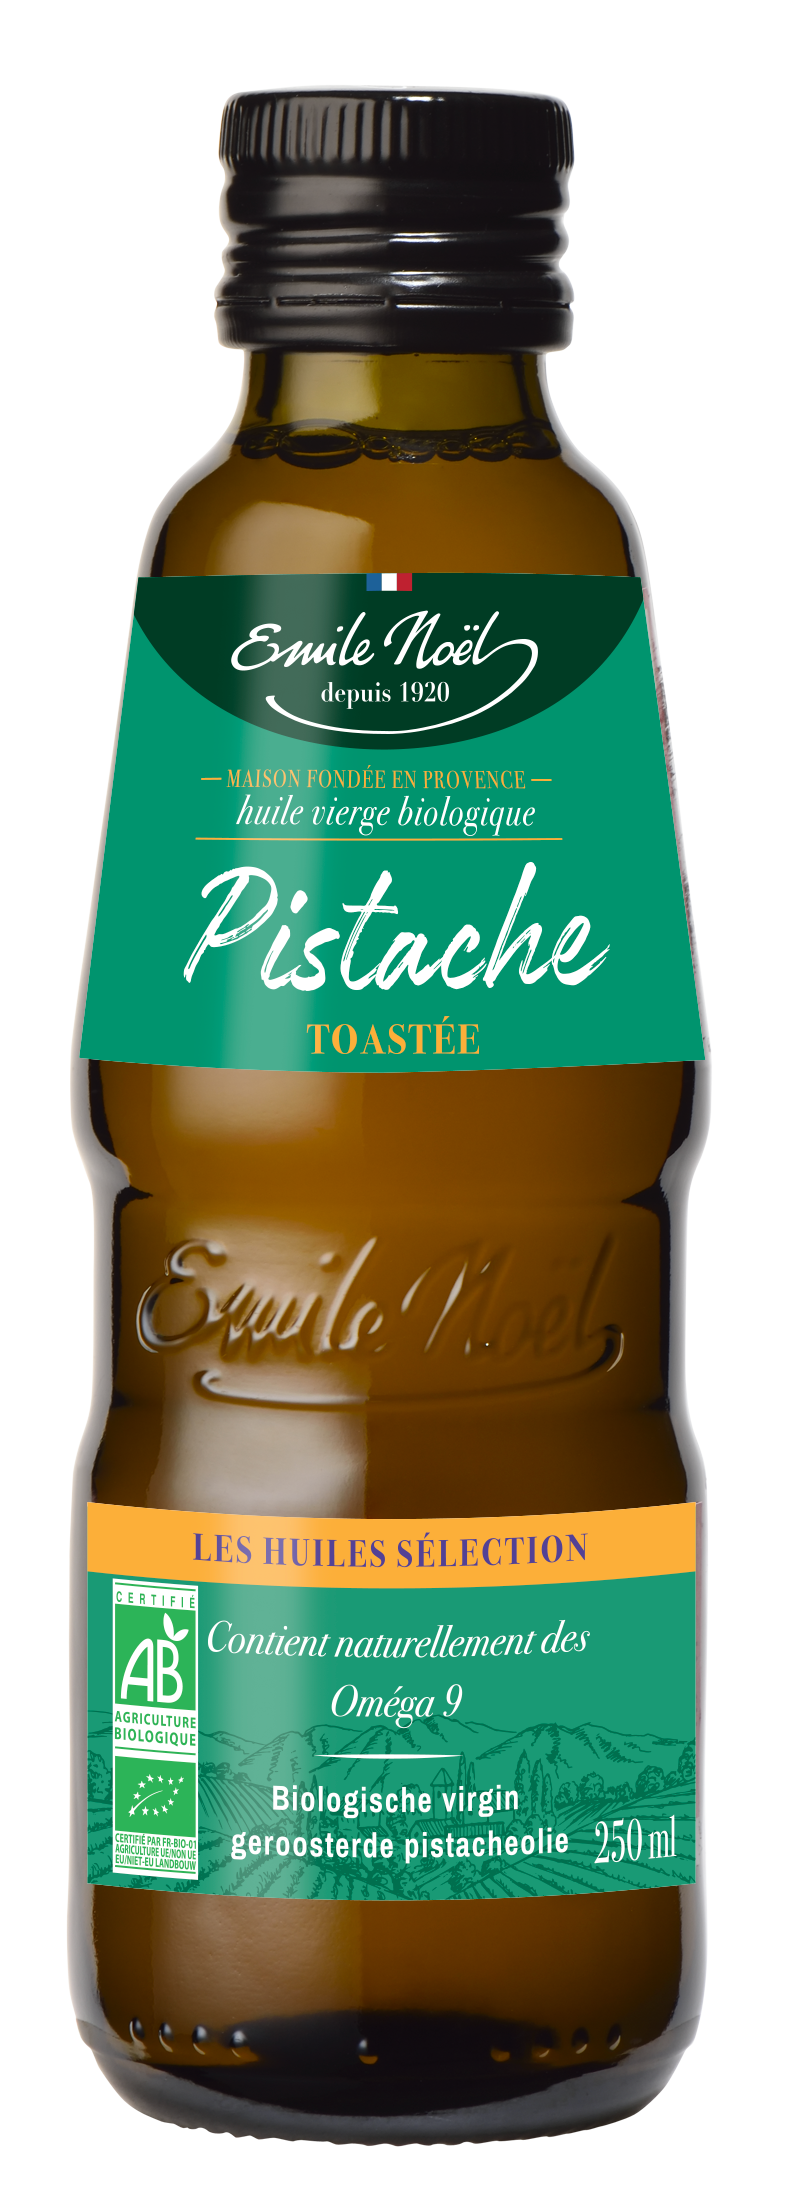 1673 HB PISTACHE TOASTEE - La famille des huiles s’agrandit avec l’huile de pistache toastée